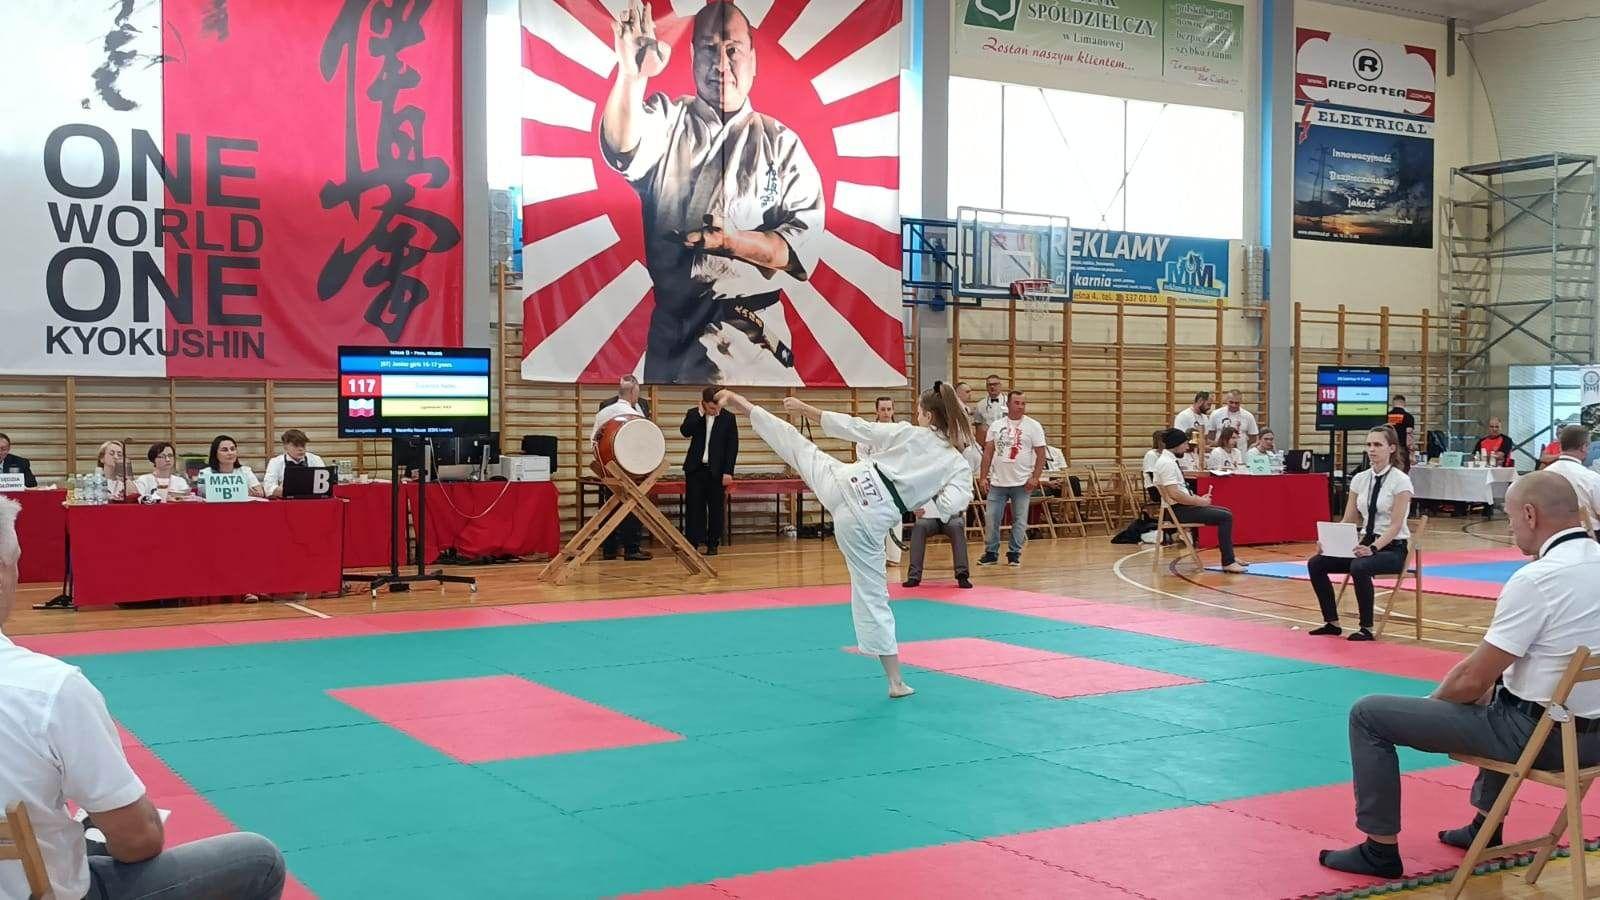 Zdj. nr. 6. IX Międzynarodowy Turniej One World One Kyokushin - 17 czerwca 2023 r., Limanowa